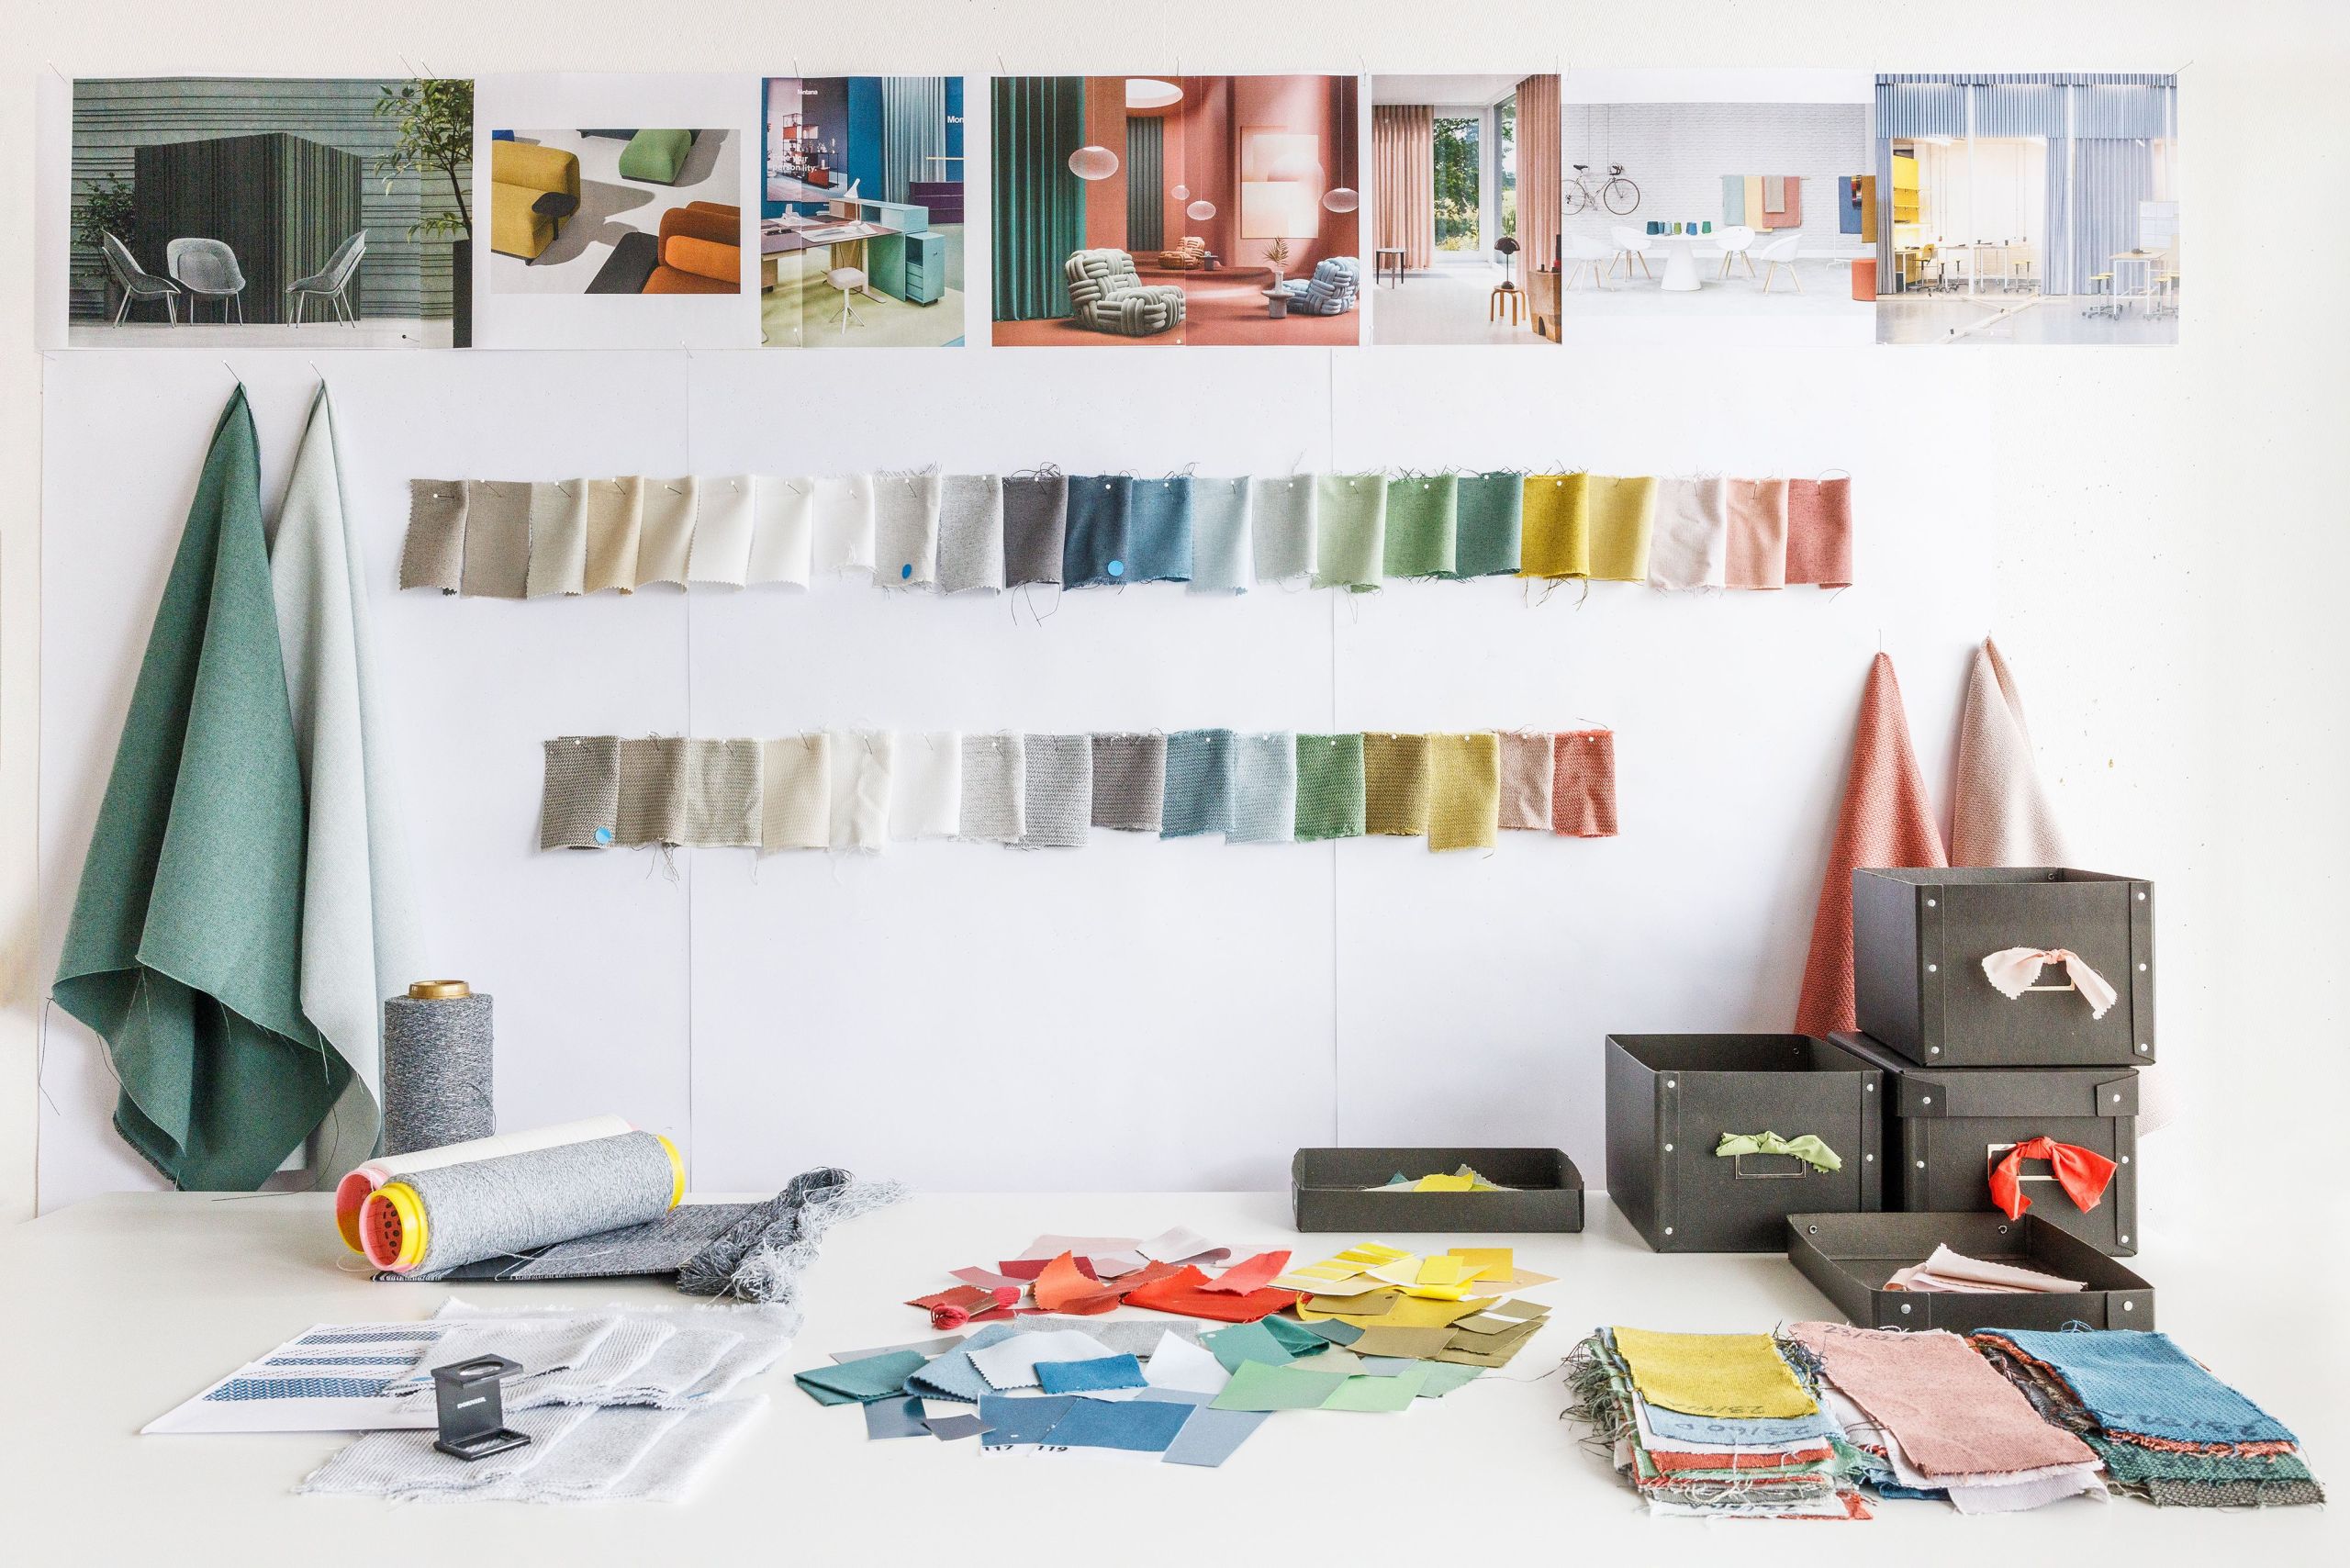 Ein Blick ins Designstudio zeigt den kreativen Prozess beim Entwickeln einer neuen textilen Lösung.